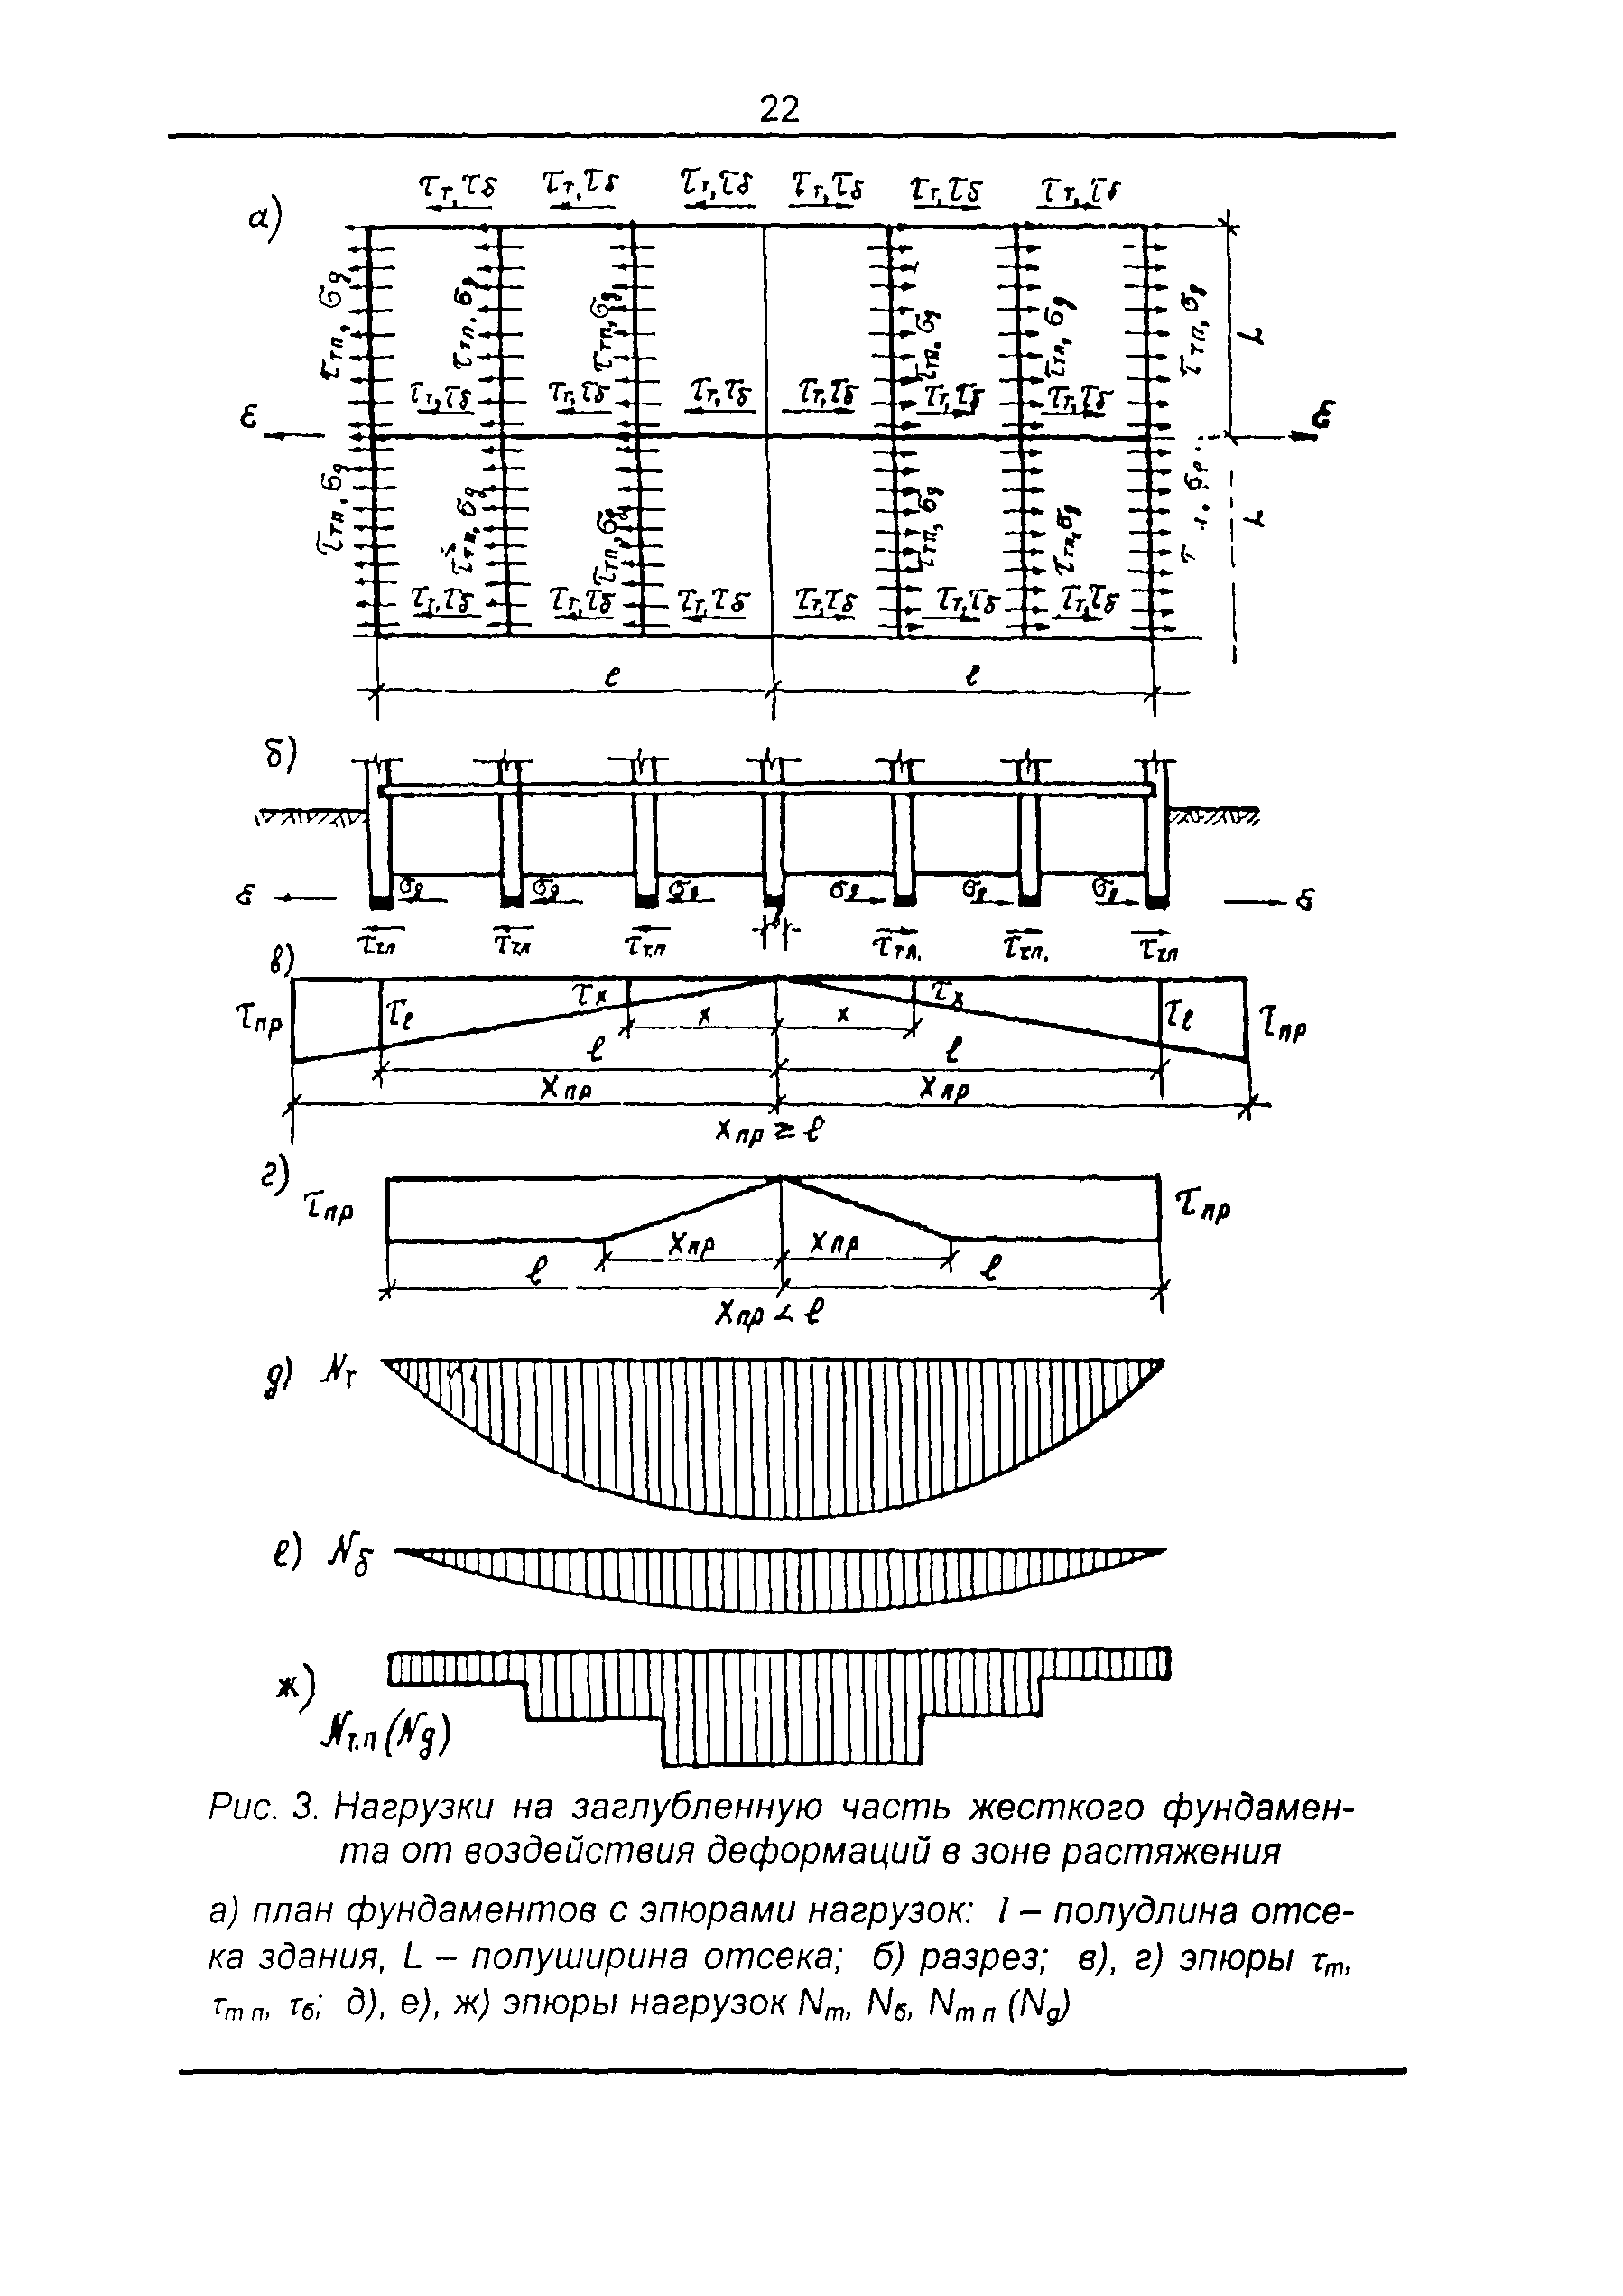 ТСН 22-301-98